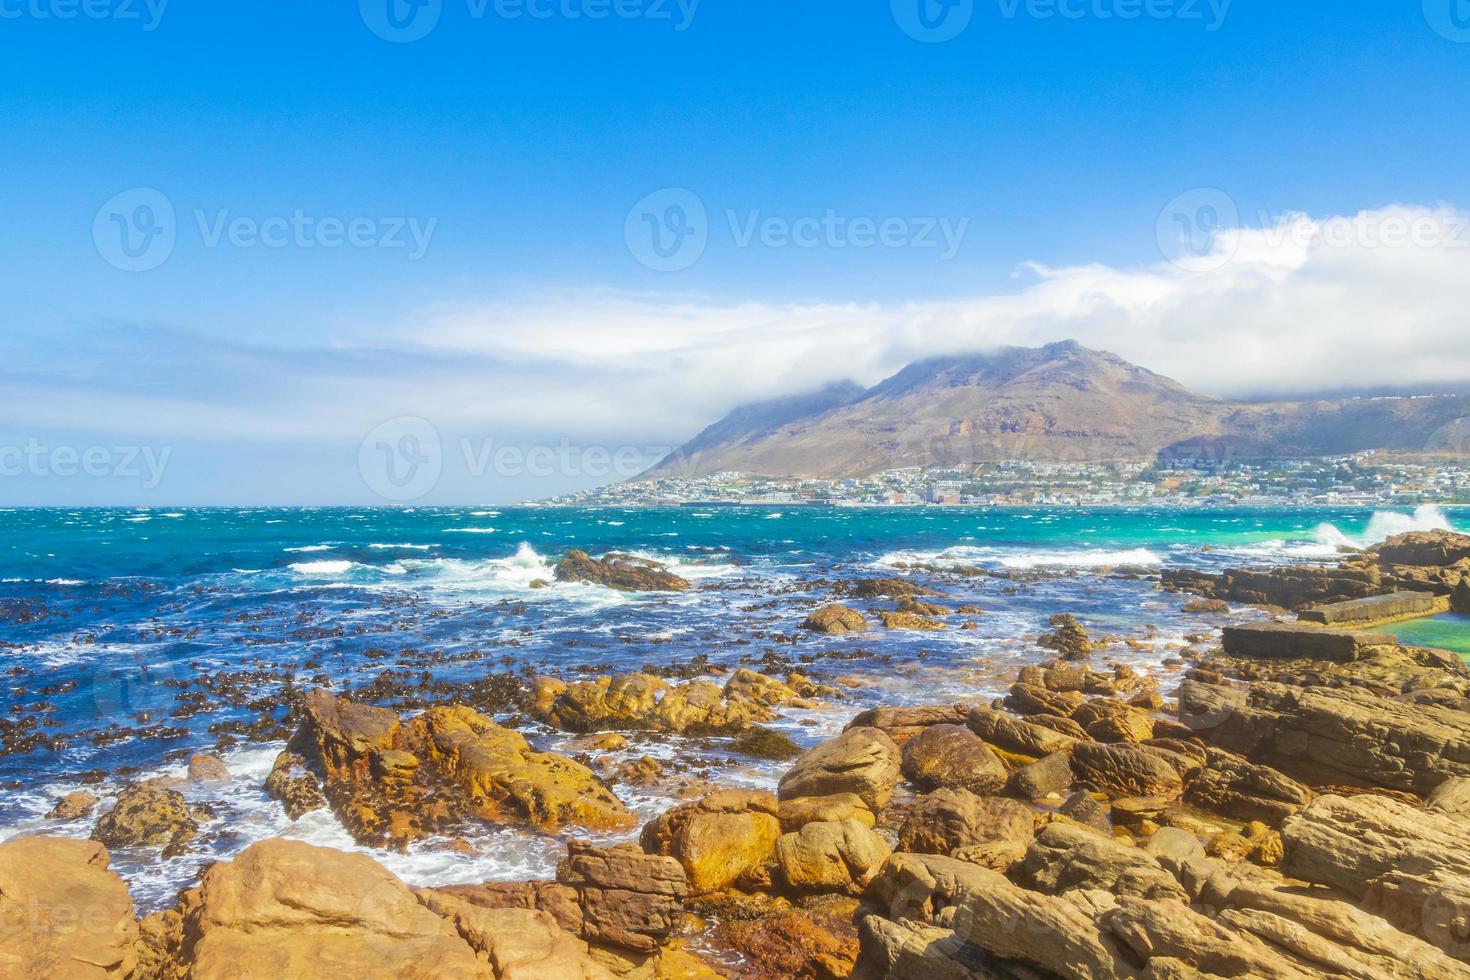 Paysage côtier rocheux à false bay, Cape Town, Afrique du Sud photo